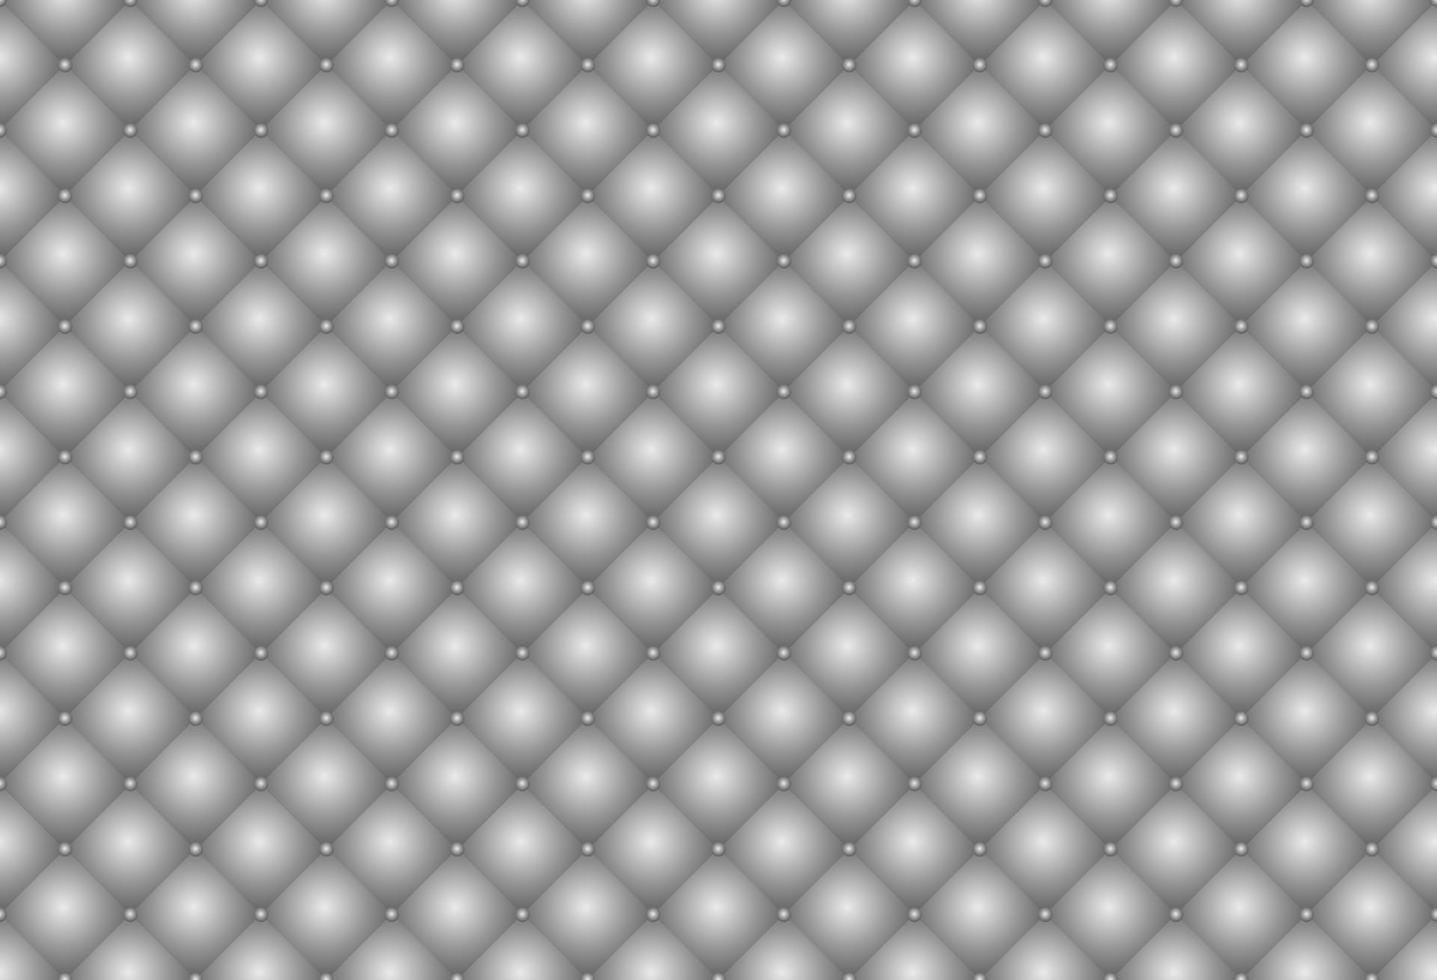 3D-glänzender silberner Polsterleder-Textur-Vektorhintergrund. gesteppte quadrate mit metallischem farbverlauf mit nahtlosem mustergitter aus silbernen perlen. vektor